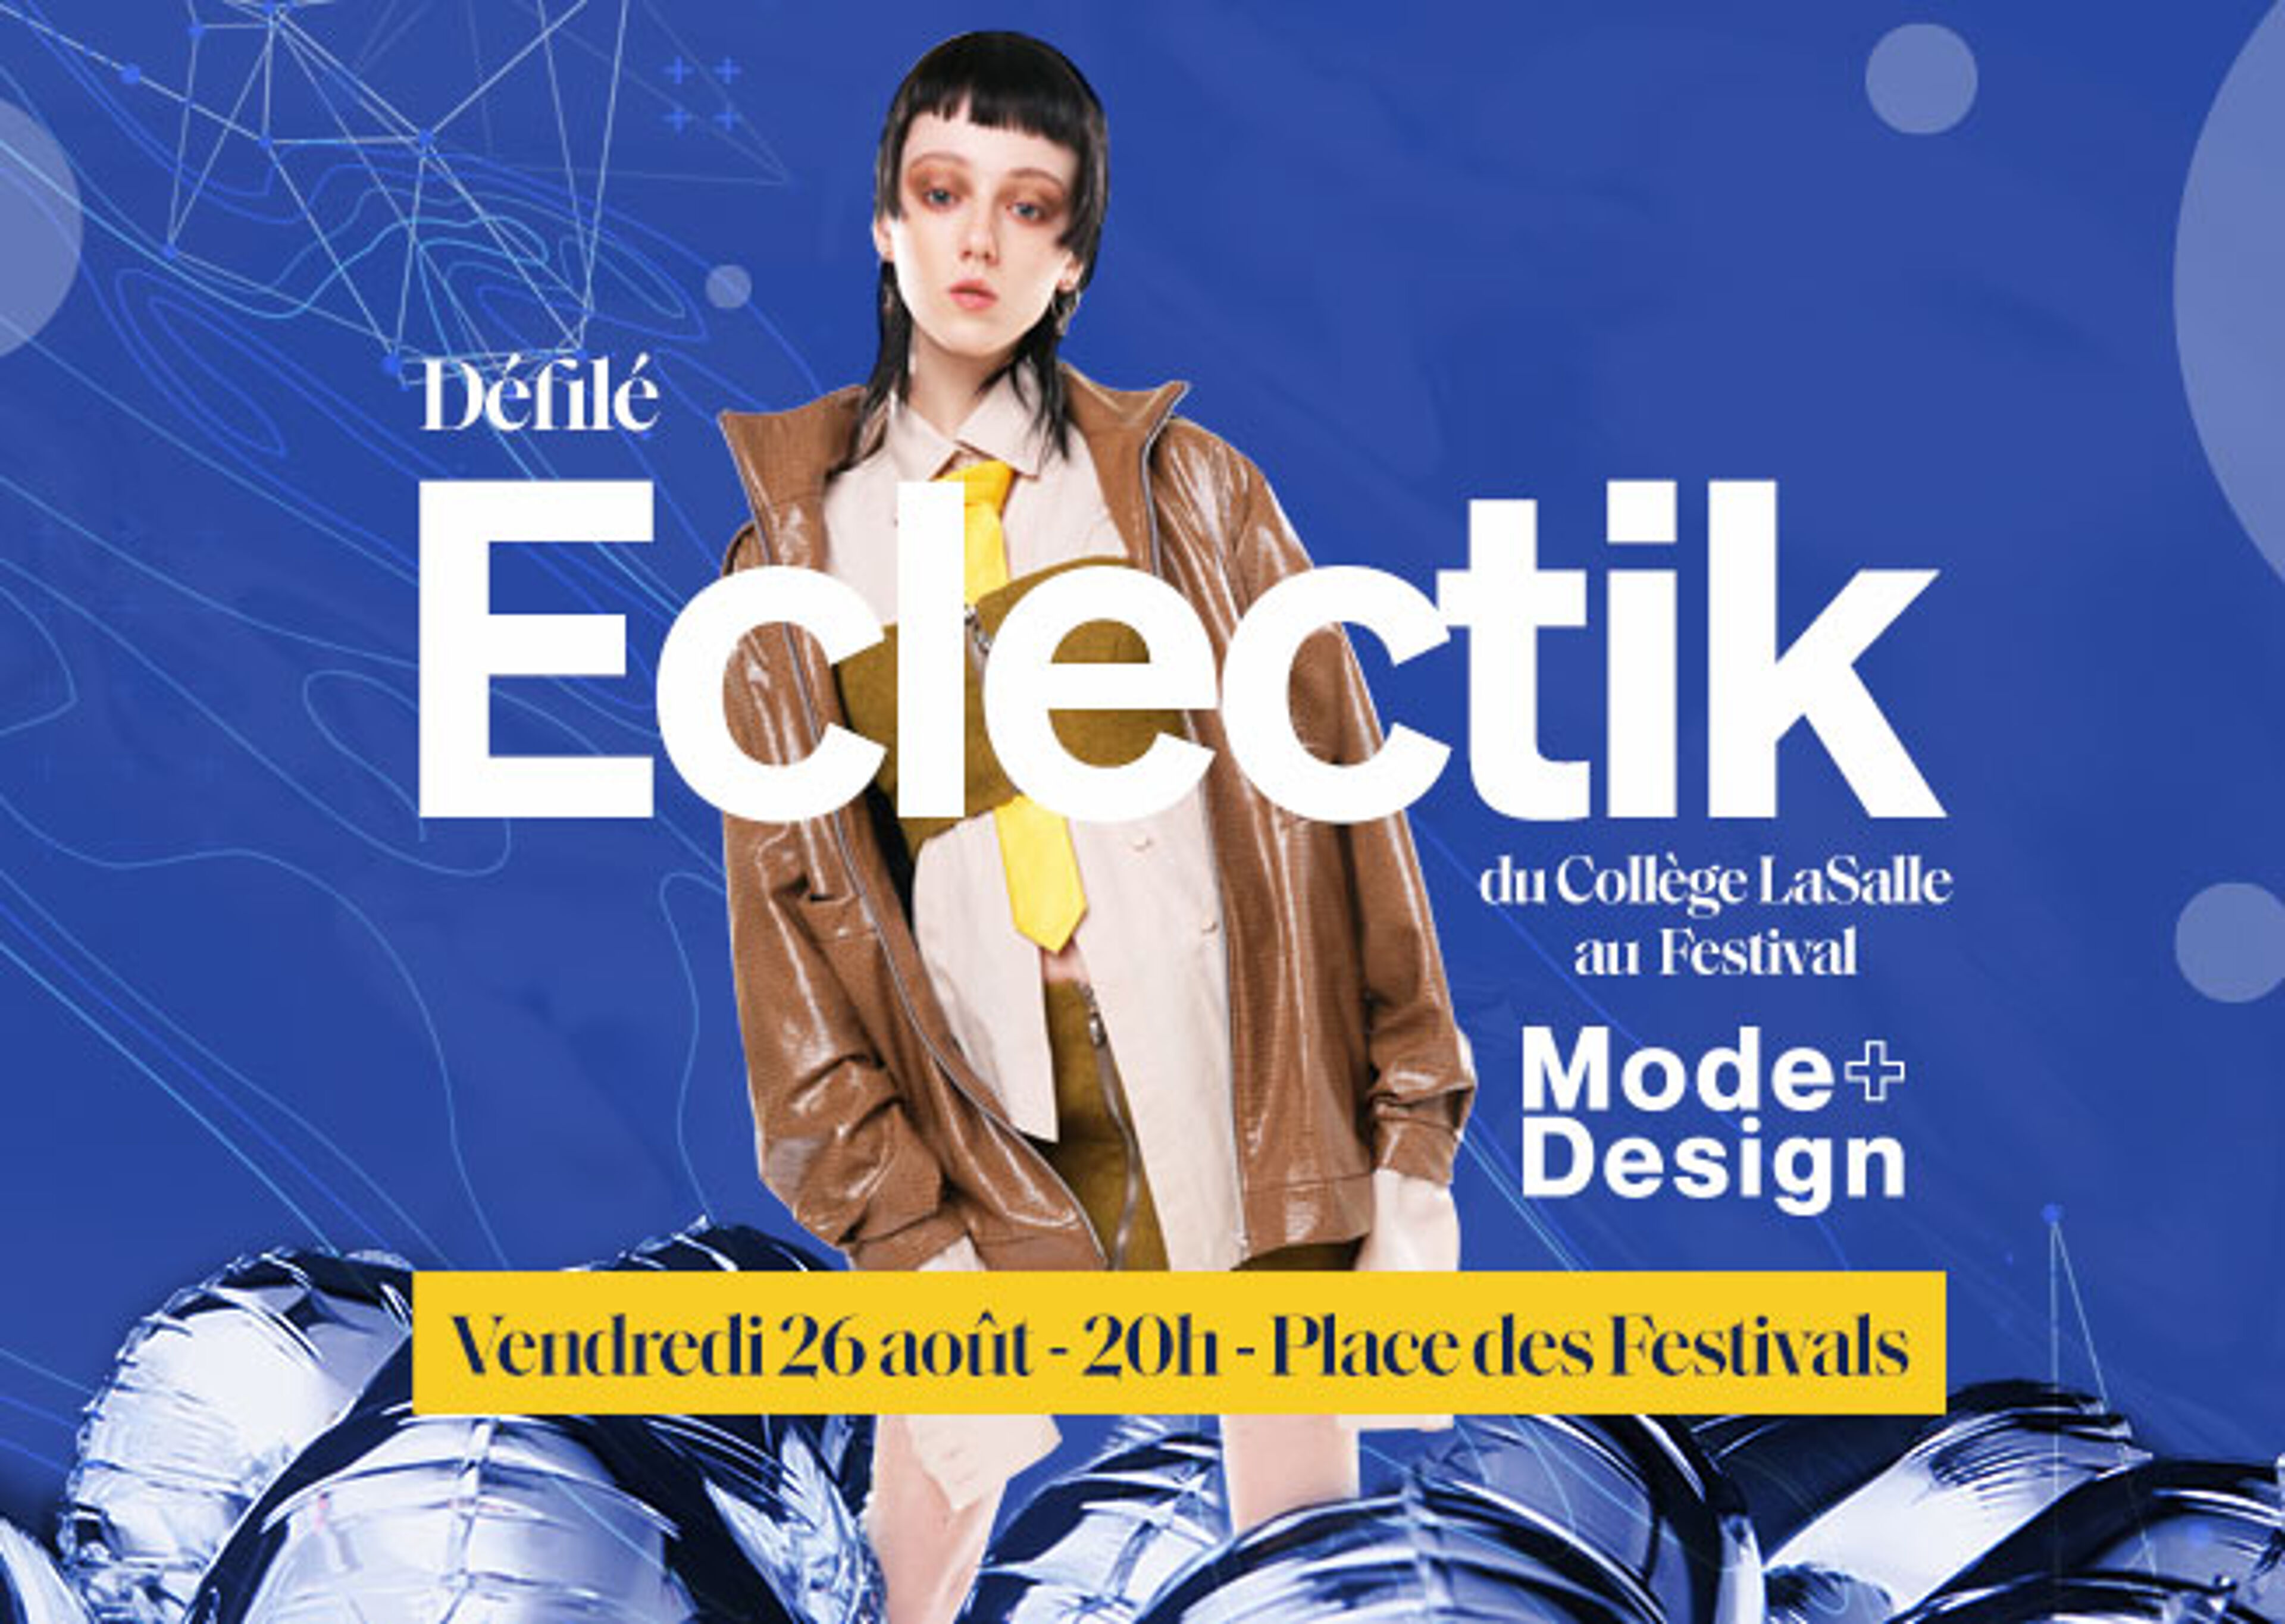 Eclectik' du Collège LaSalle au Festival Mode+Design, un défilé de mode le vendredi 26 août à 20h - Place des Festivals.